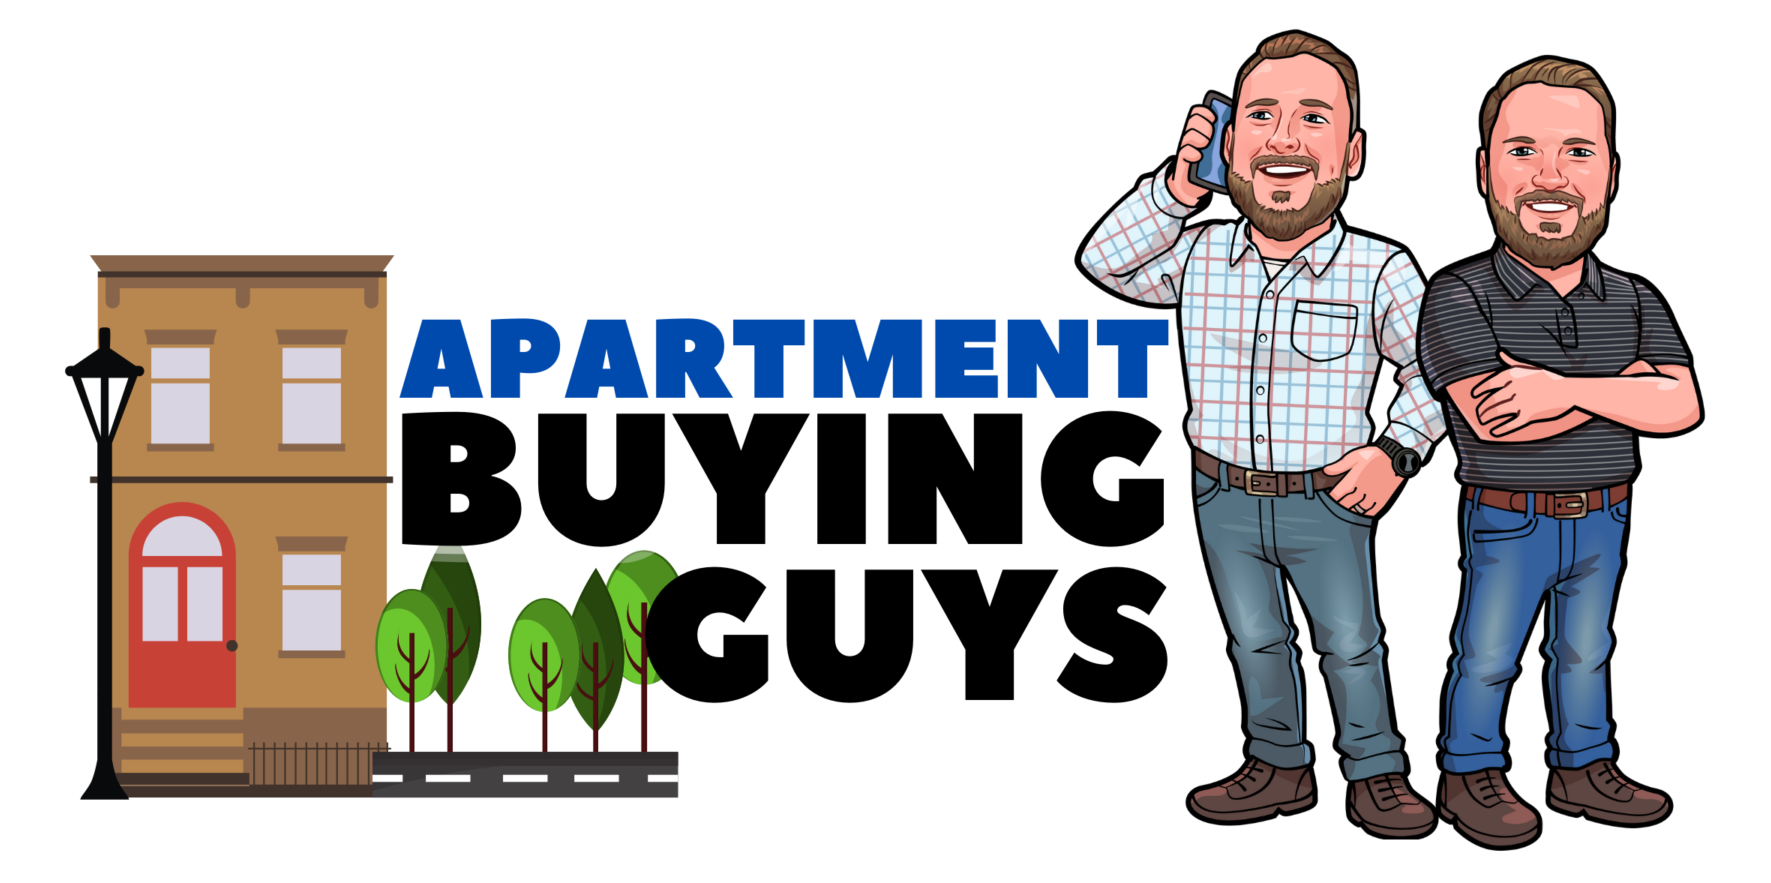 Apartment Buying Guys logo